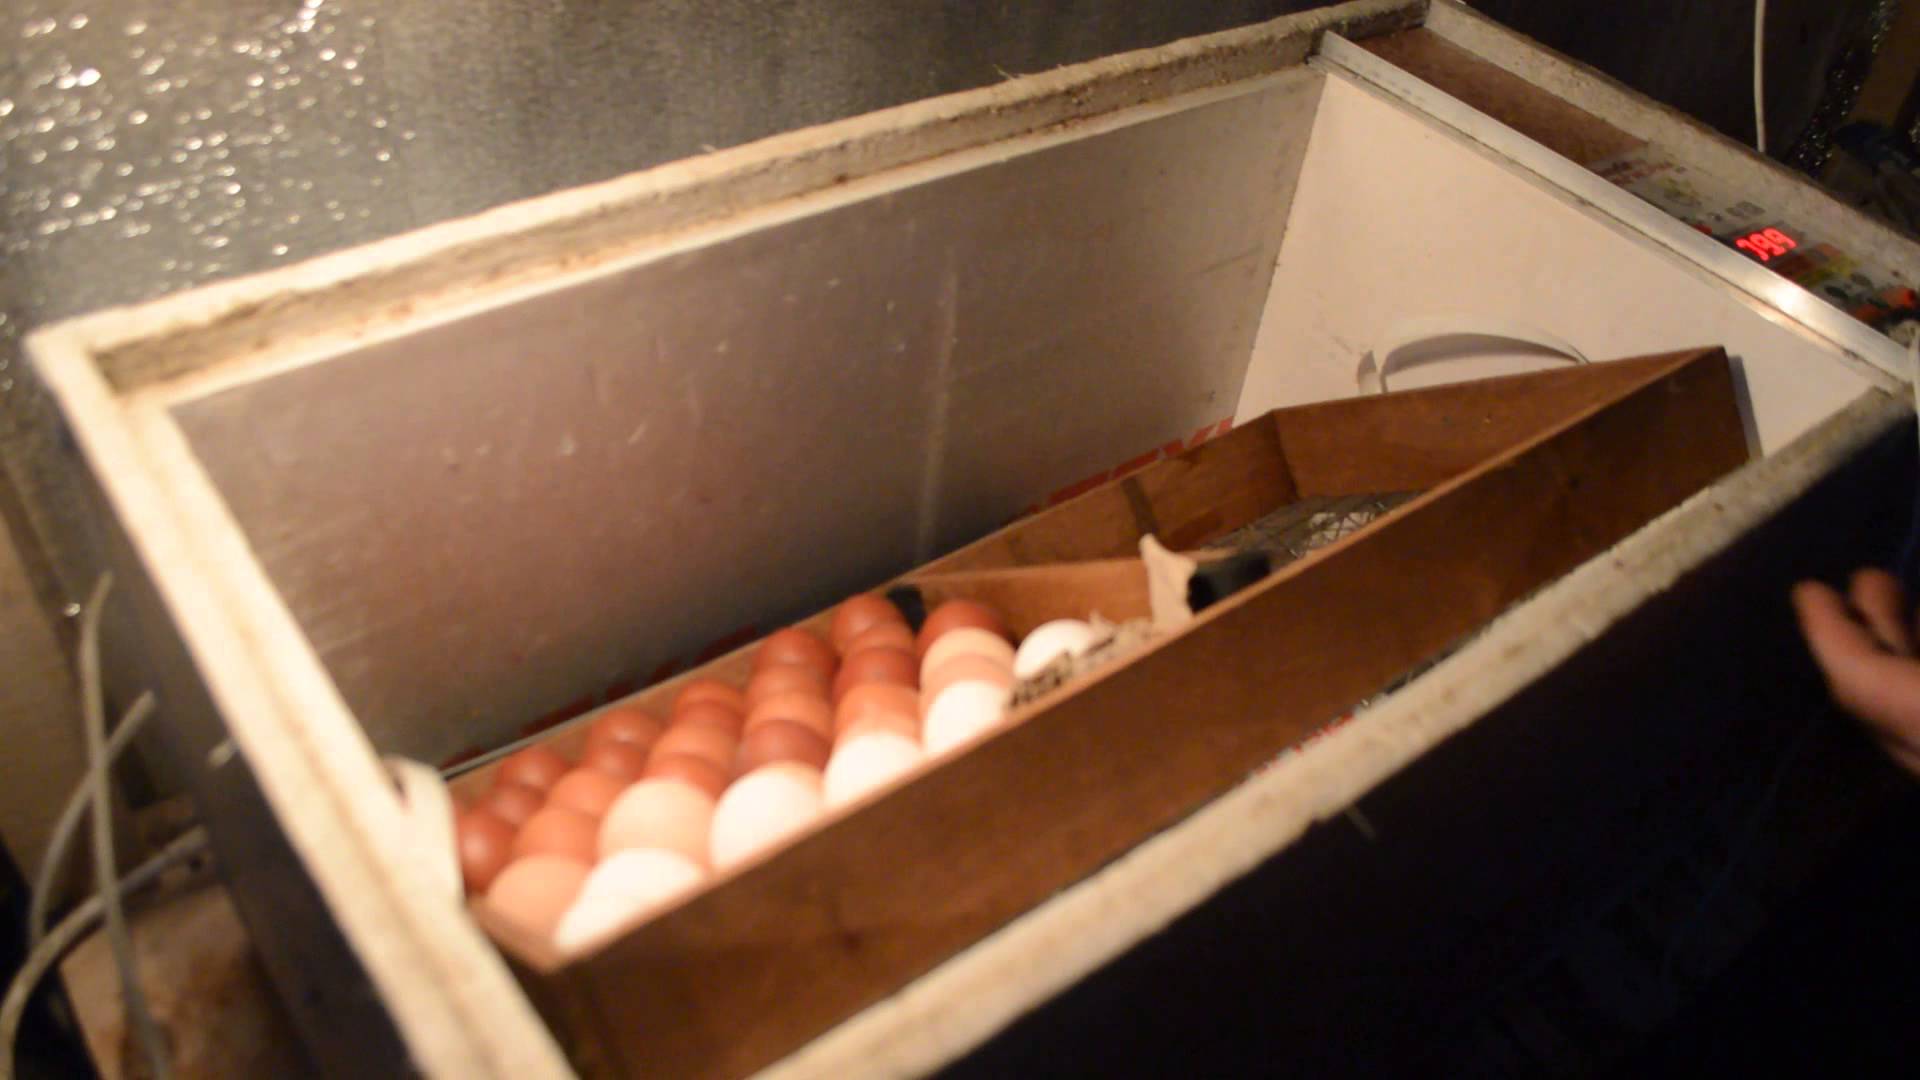 Закладка яиц в инкубатор блиц